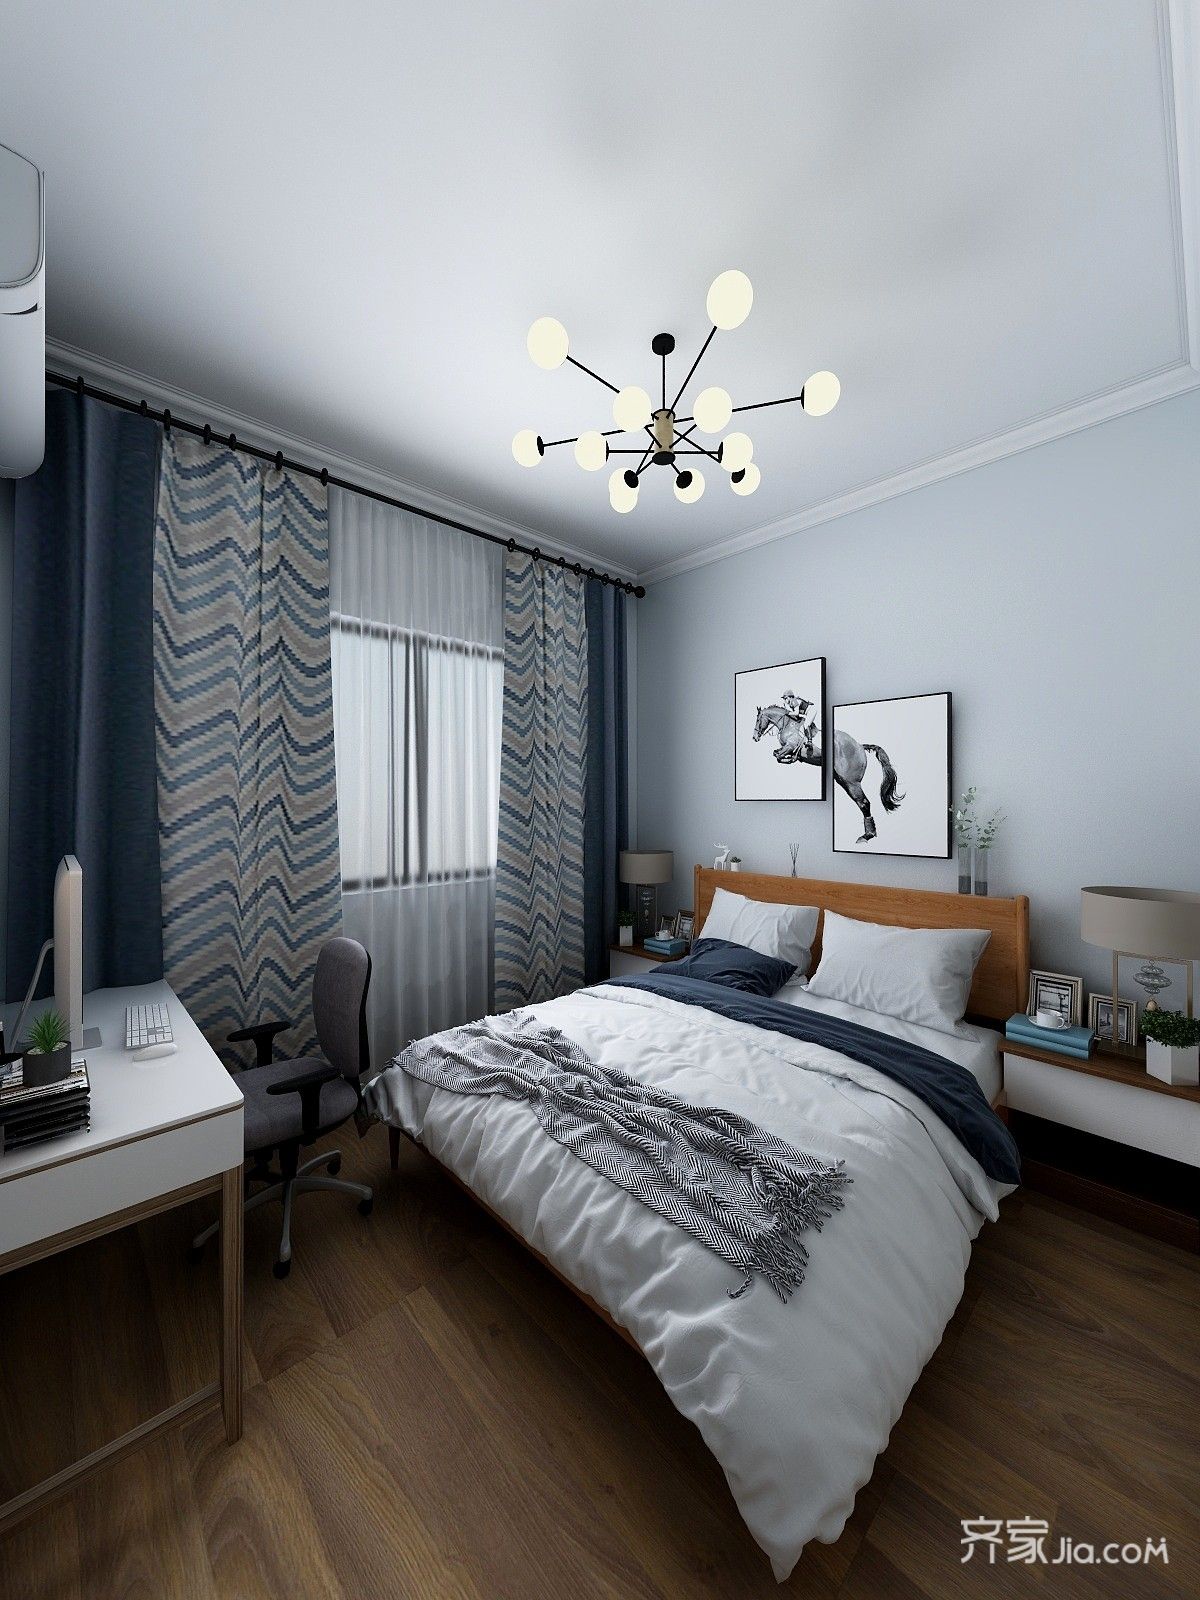 主卧室的设计我们一贯很简单,整体的暖色系涂料加上软装搭配